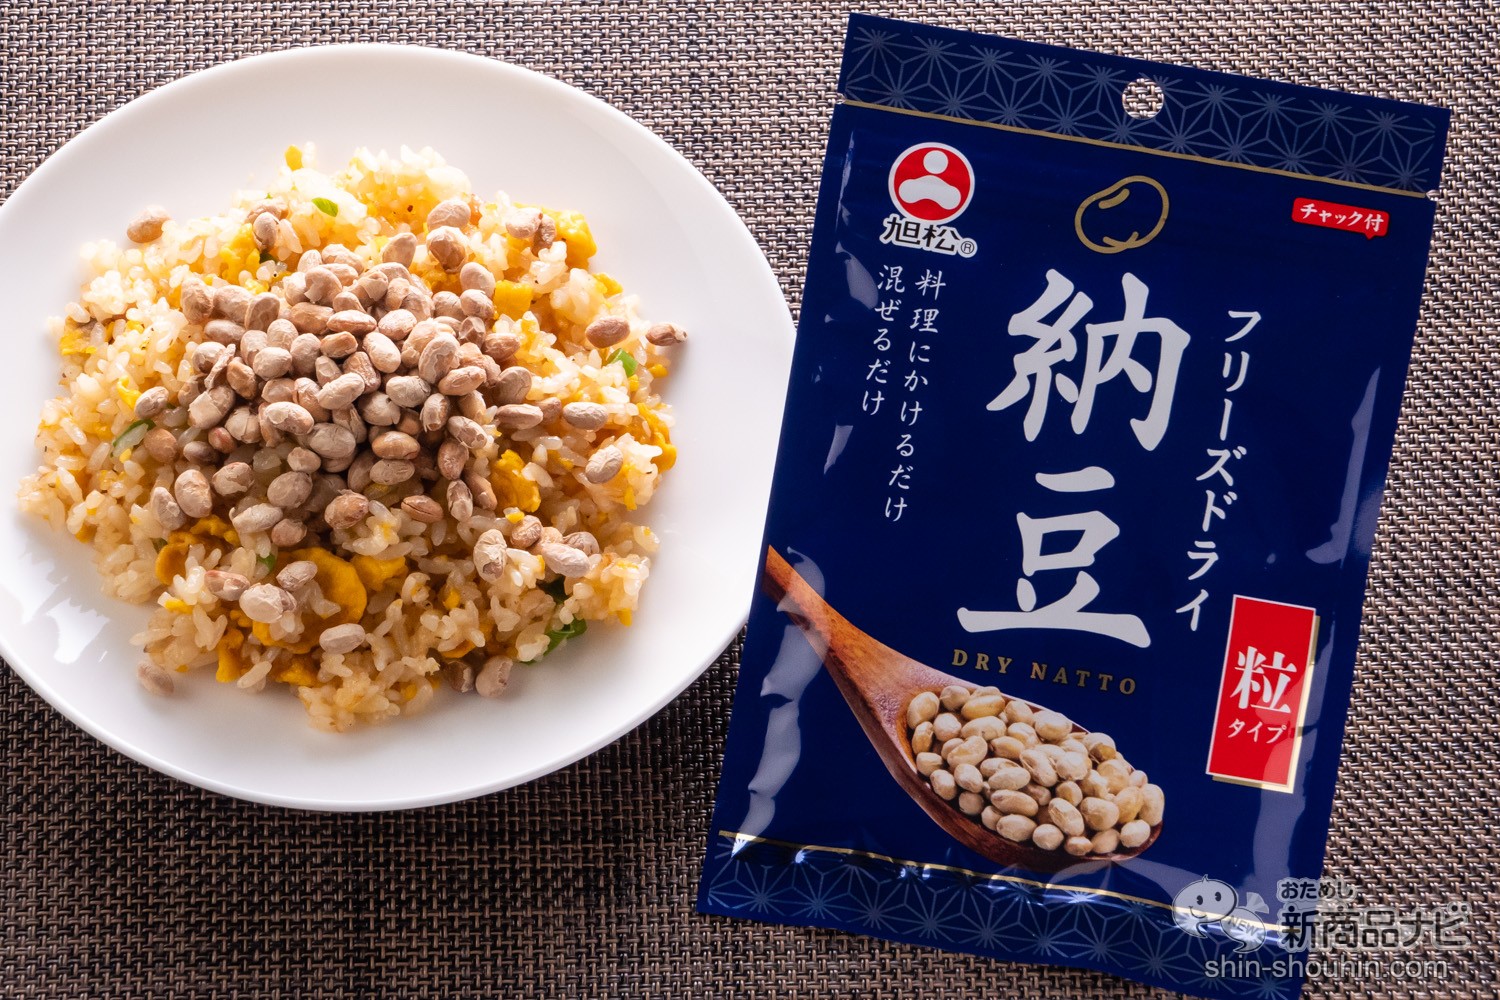 おためし新商品ナビ » Blog Archive » 【新感覚】ふりかけて食べる納豆!?『フリーズドライ納豆 粒タイプ』をチャーハンにかけて食べてみた！